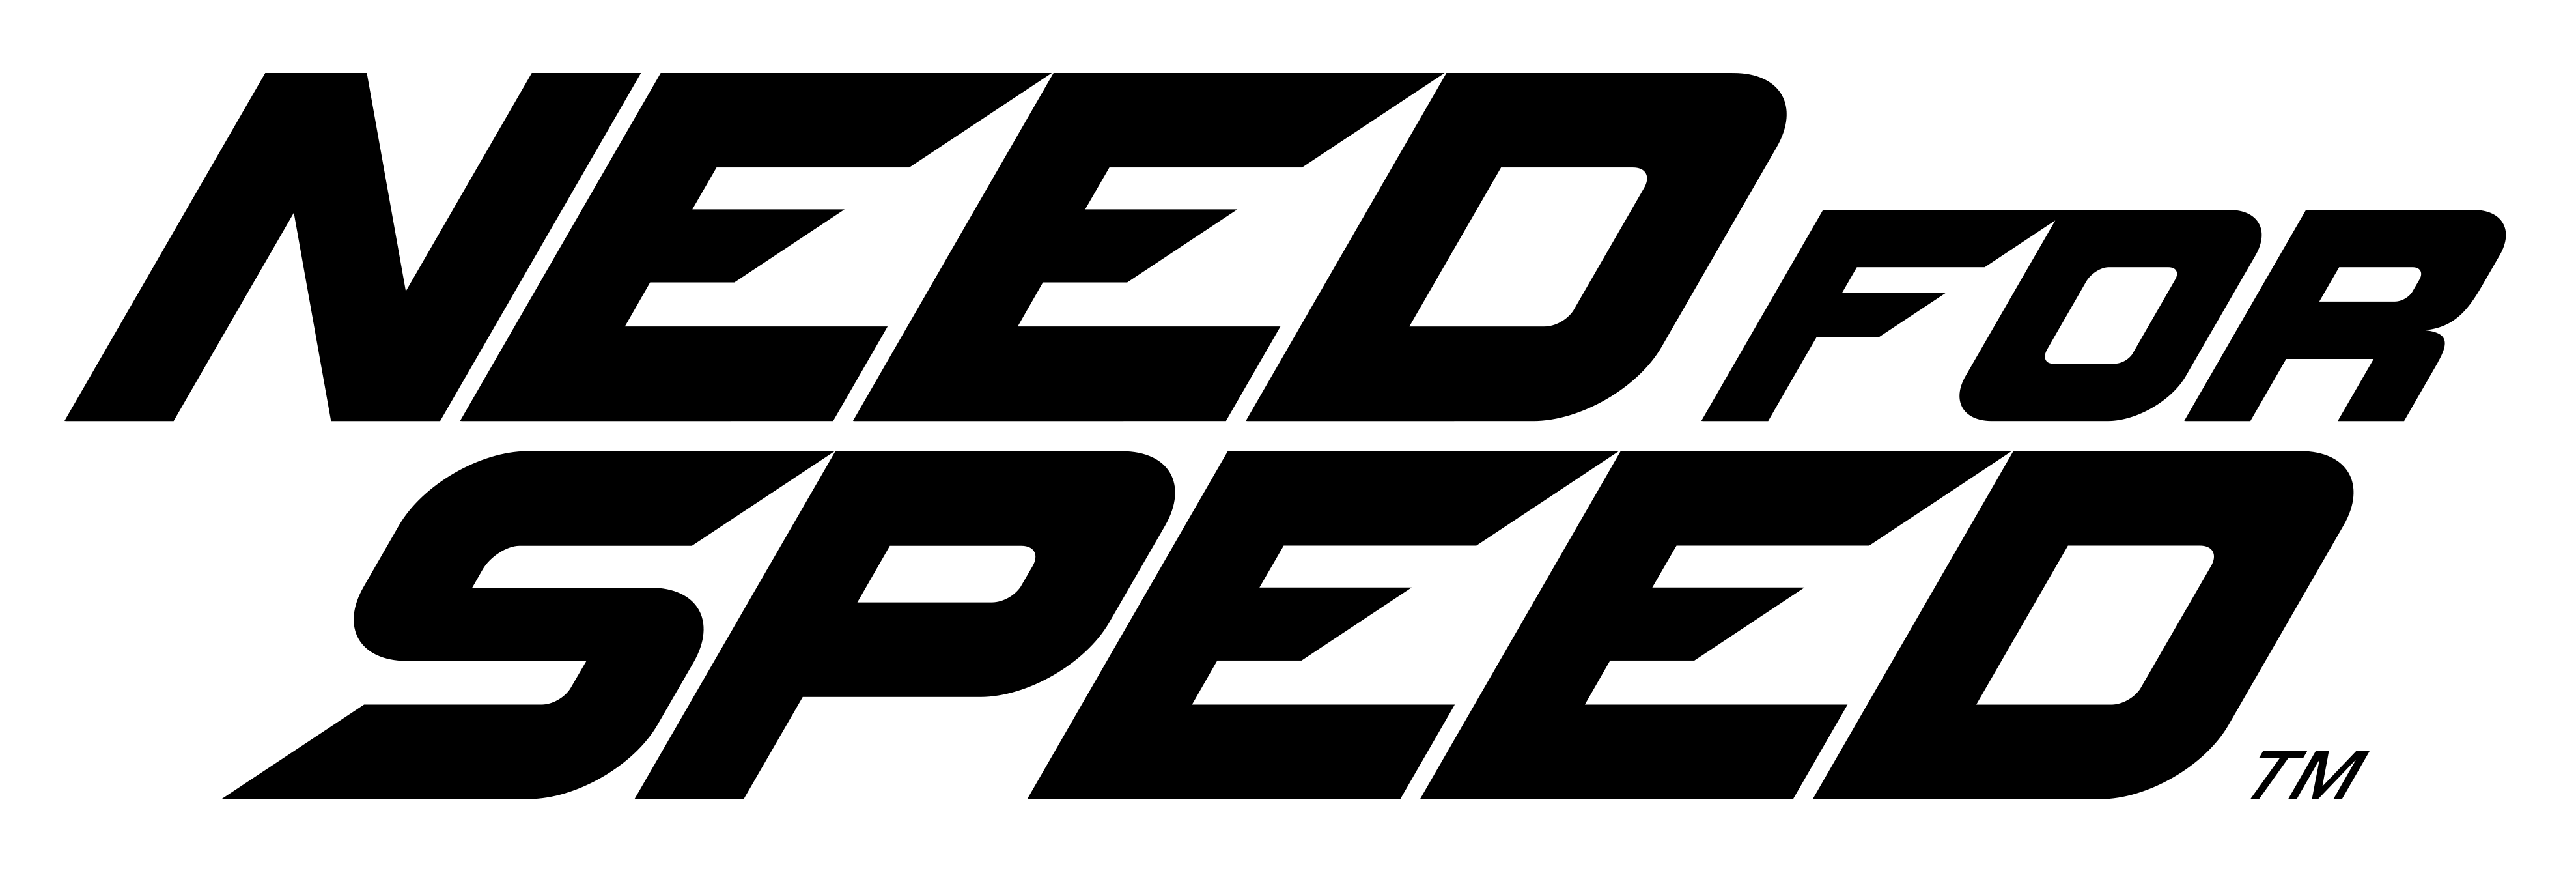 Needfor Speed Logo